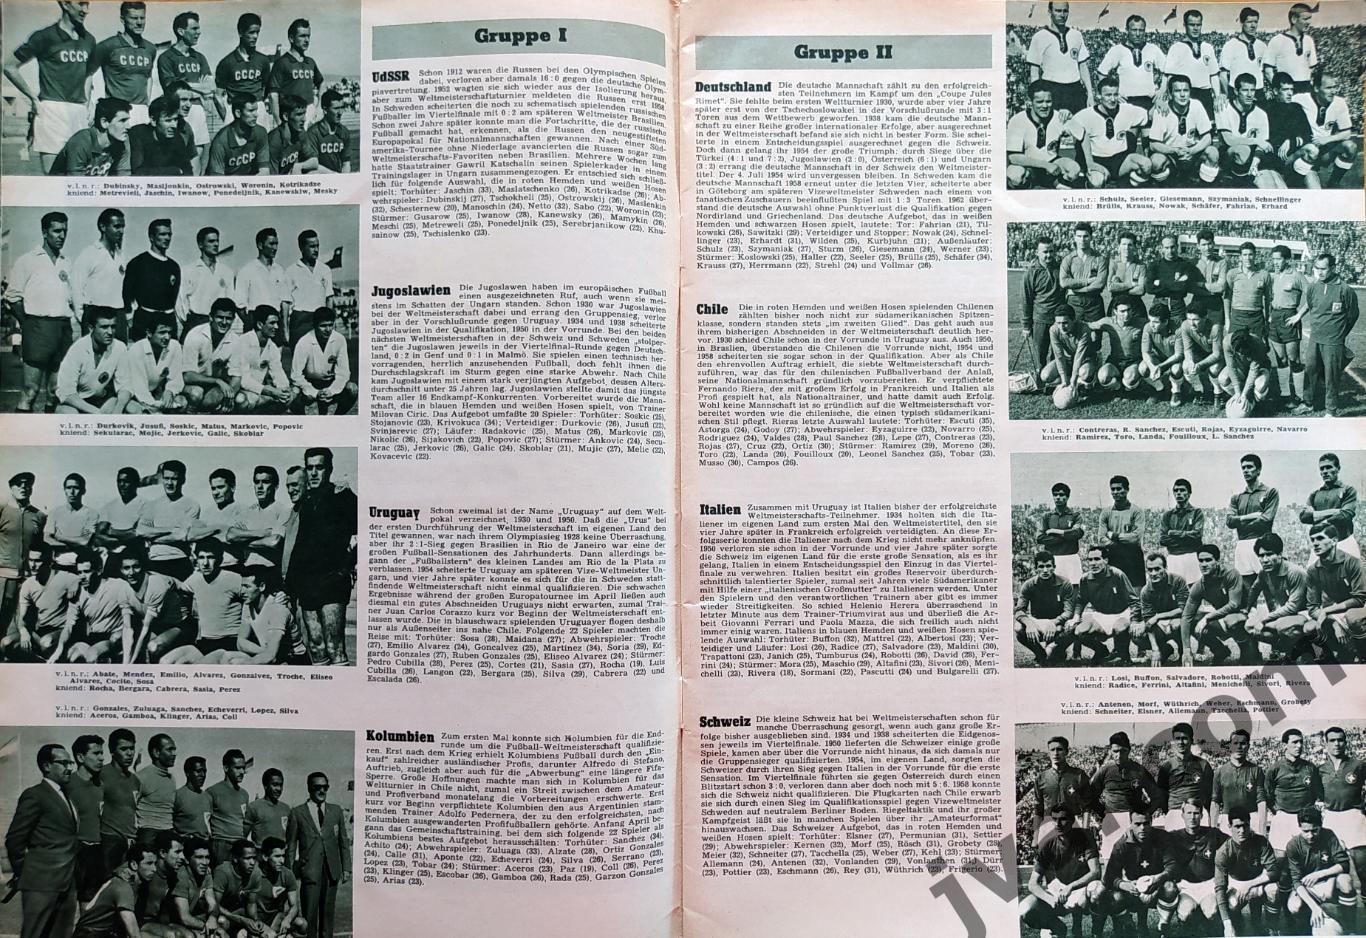 FUSSBALL-1962 Weltmeisterschaft / Чемпионат Мира по футболу в Чили 1962 года. 2